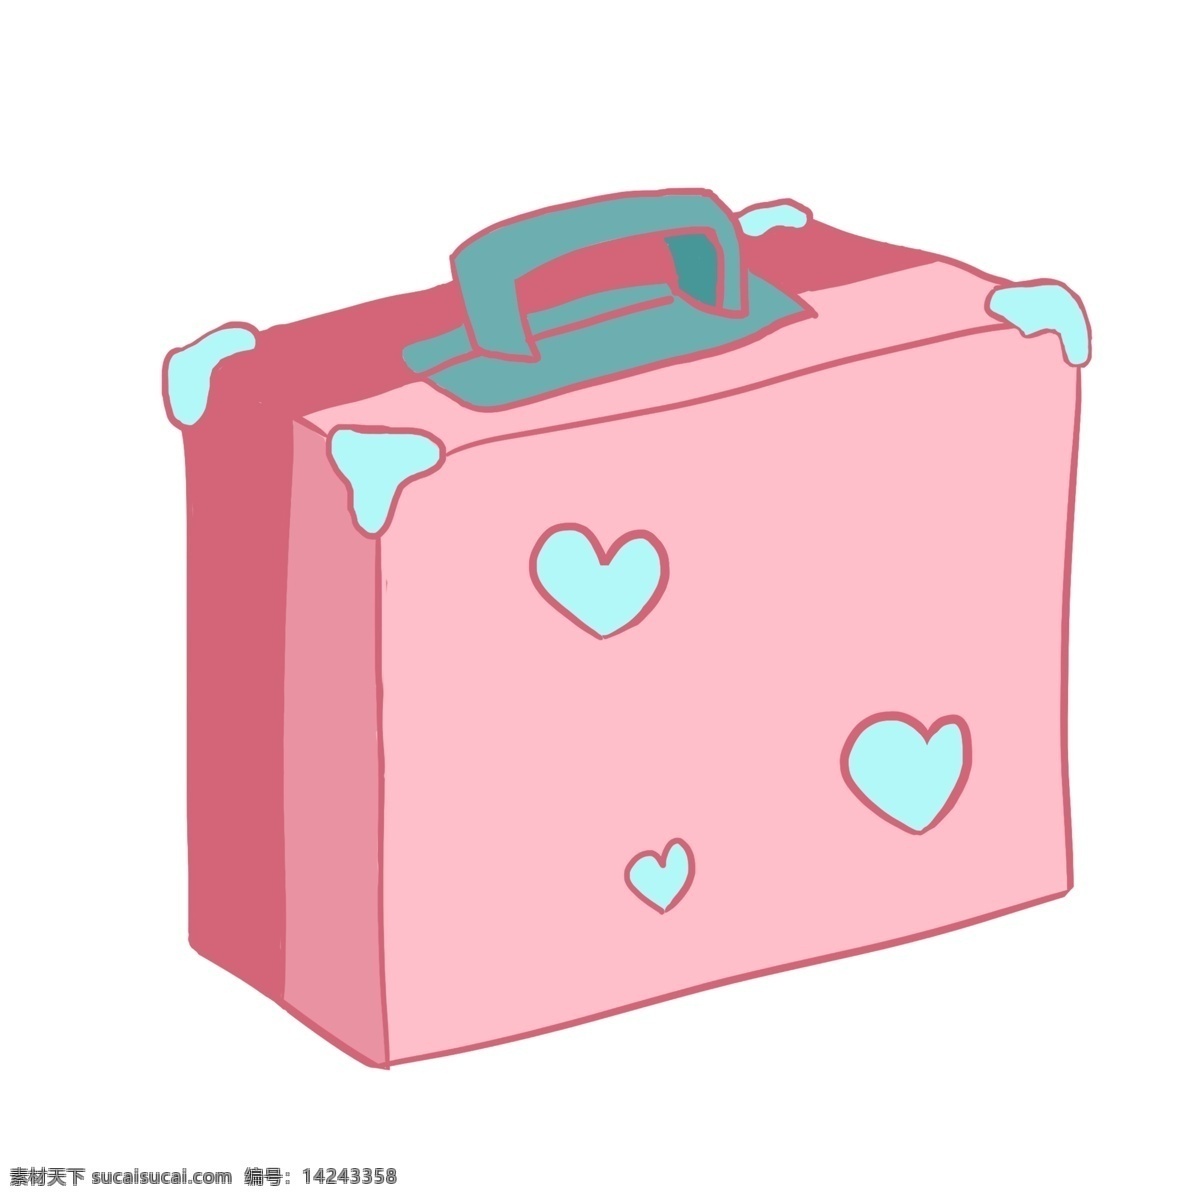 卡通 粉色 手提箱 插画 手绘 长方形 箱子 粉色图案箱子 手绘线条爱心 粉色箱子 旅行用品 卡通箱子